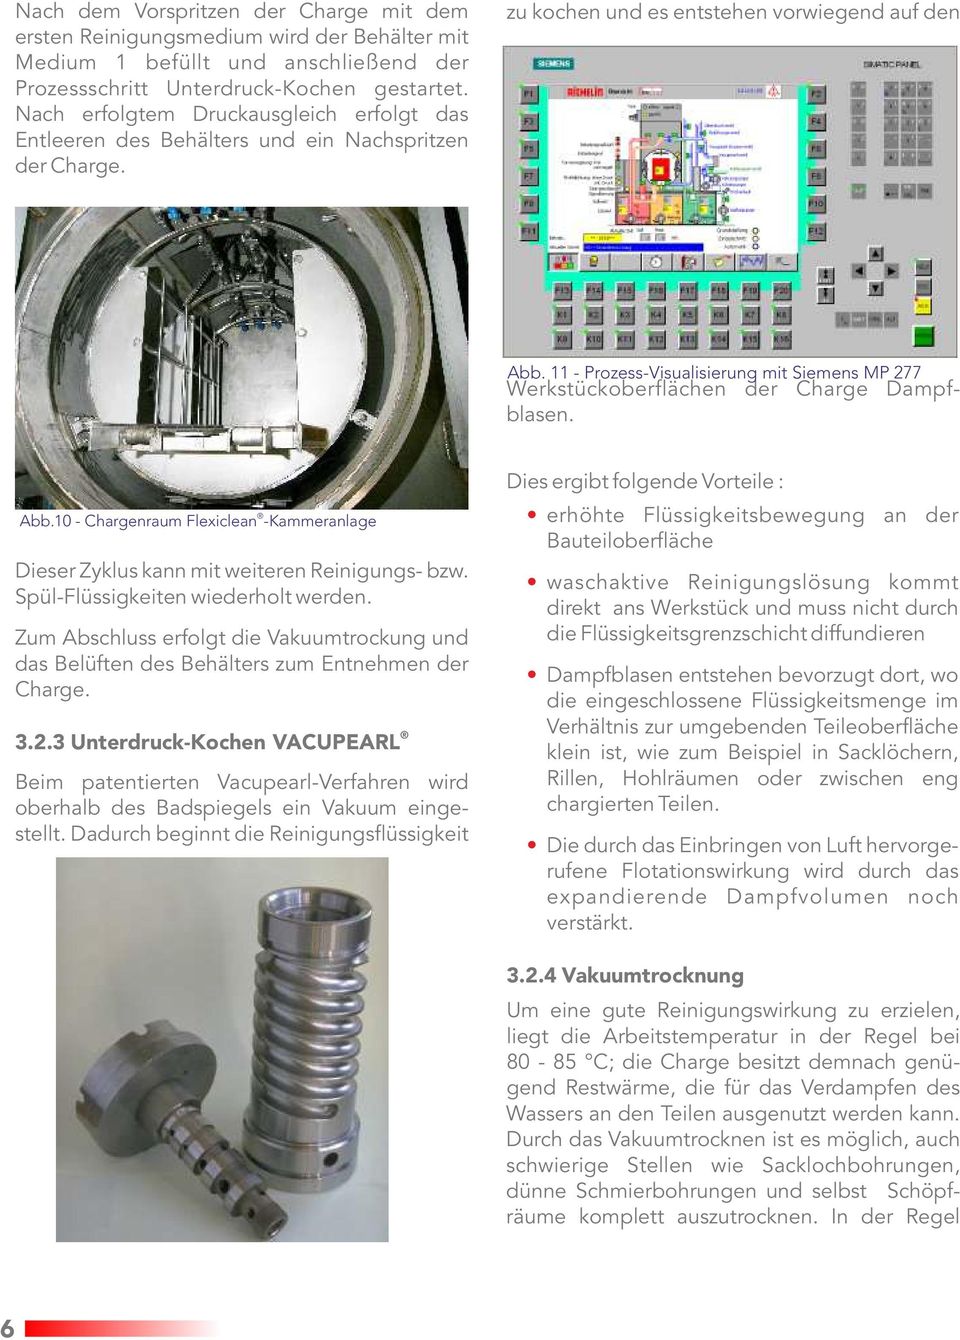 11 - Prozess-Visualisierung mit Siemens MP 277 Werkstückoberflächen der Charge Dampfblasen. Abb.10 - Chargenraum Flexiclean -Kammeranlage Dieser Zyklus kann mit weiteren Reinigungs- bzw.